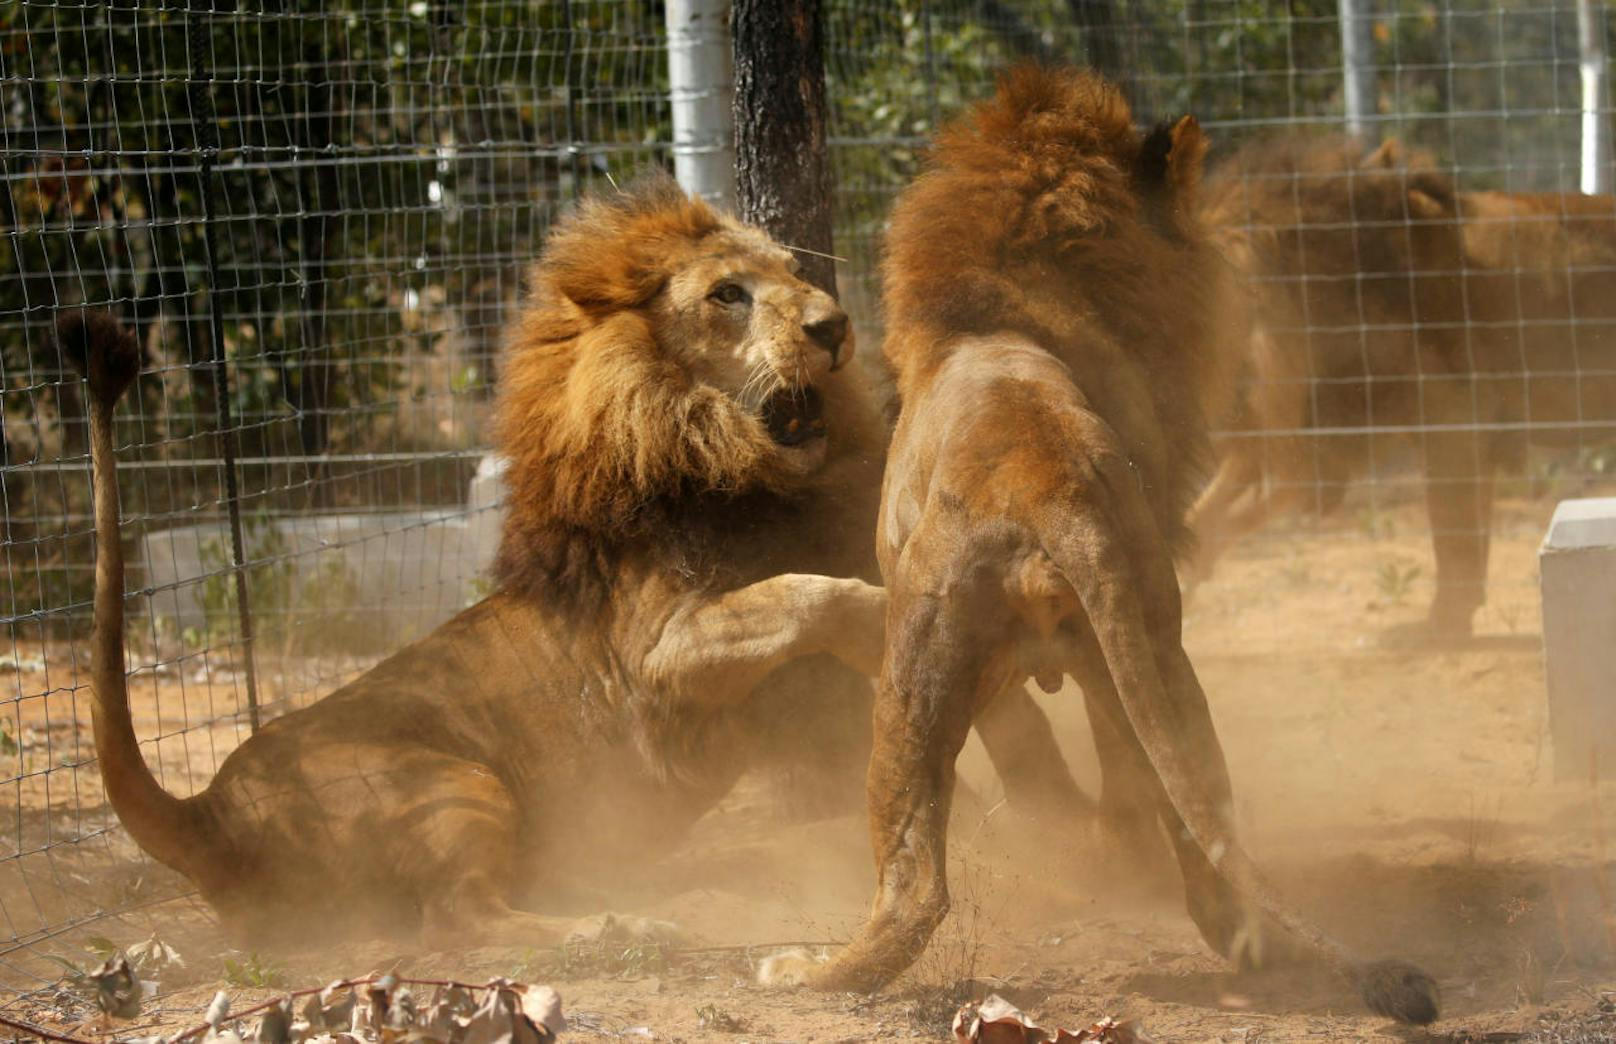 Lange Zeit waren Löwen beliebte Zirkustiere. 33 Tiere wurden 2016 aus der Gefangenschaft verschiedener Zirkusse in Peru und Kolumbien gerettet. Sie haben in Südafrika eine neue Heimat gefunden.